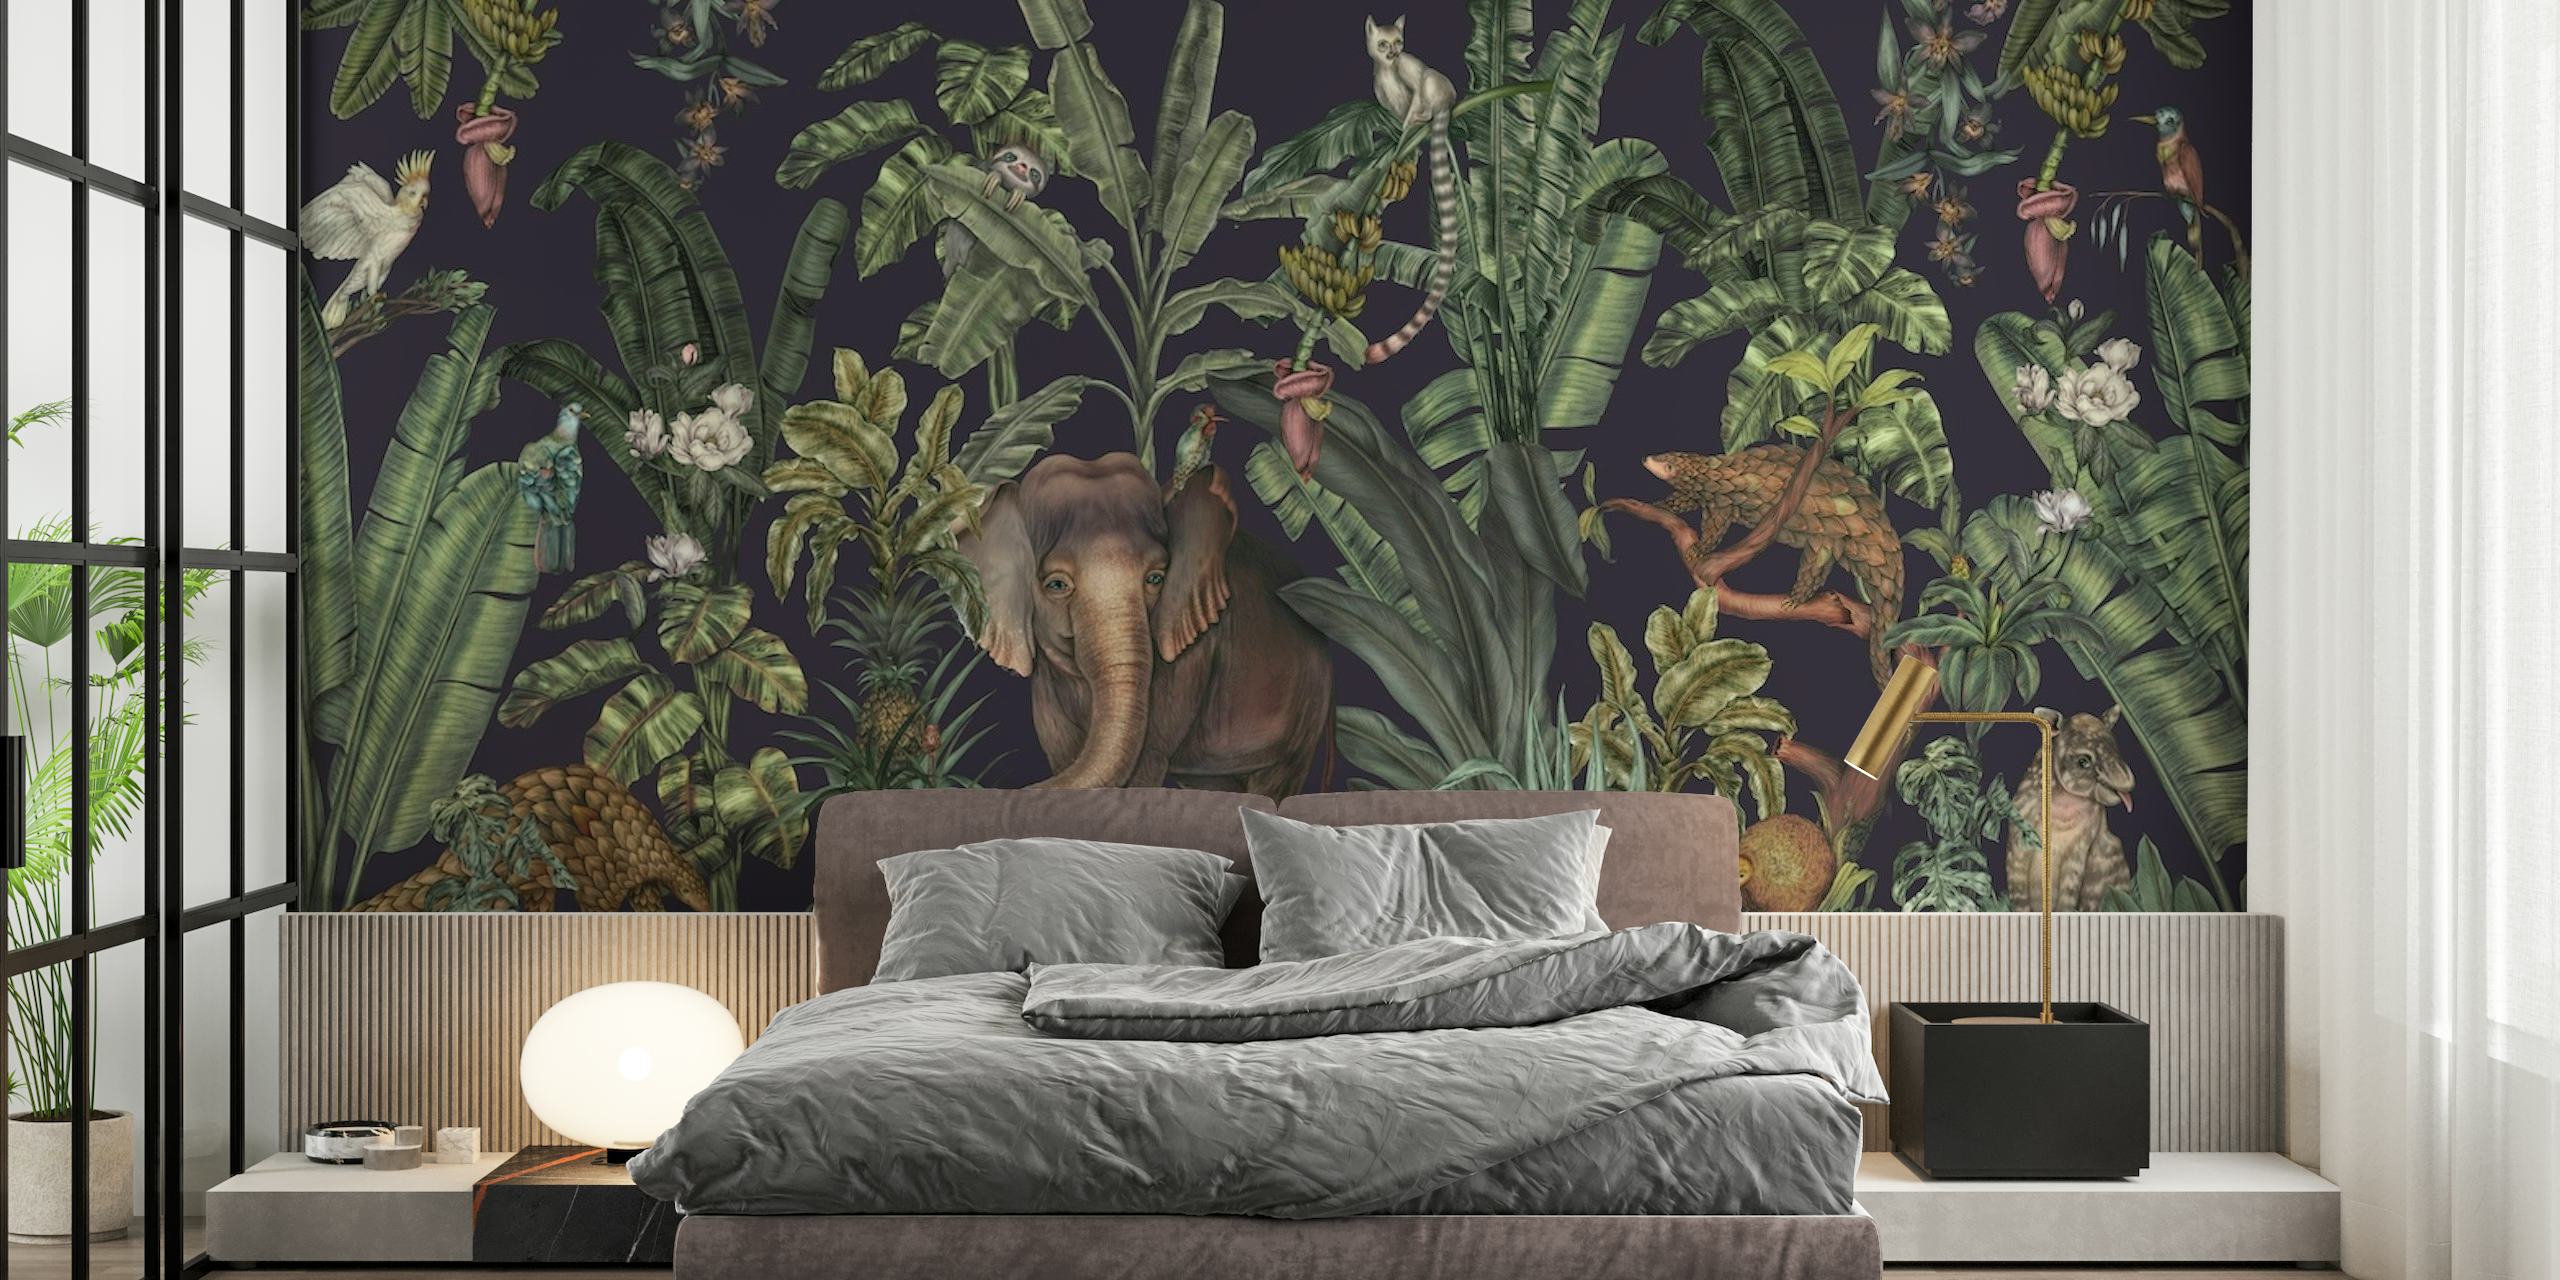 Trooppinen viidakon seinämaalaus, jossa on tiheää vehreyttä ja piilotettuja villieläimiä